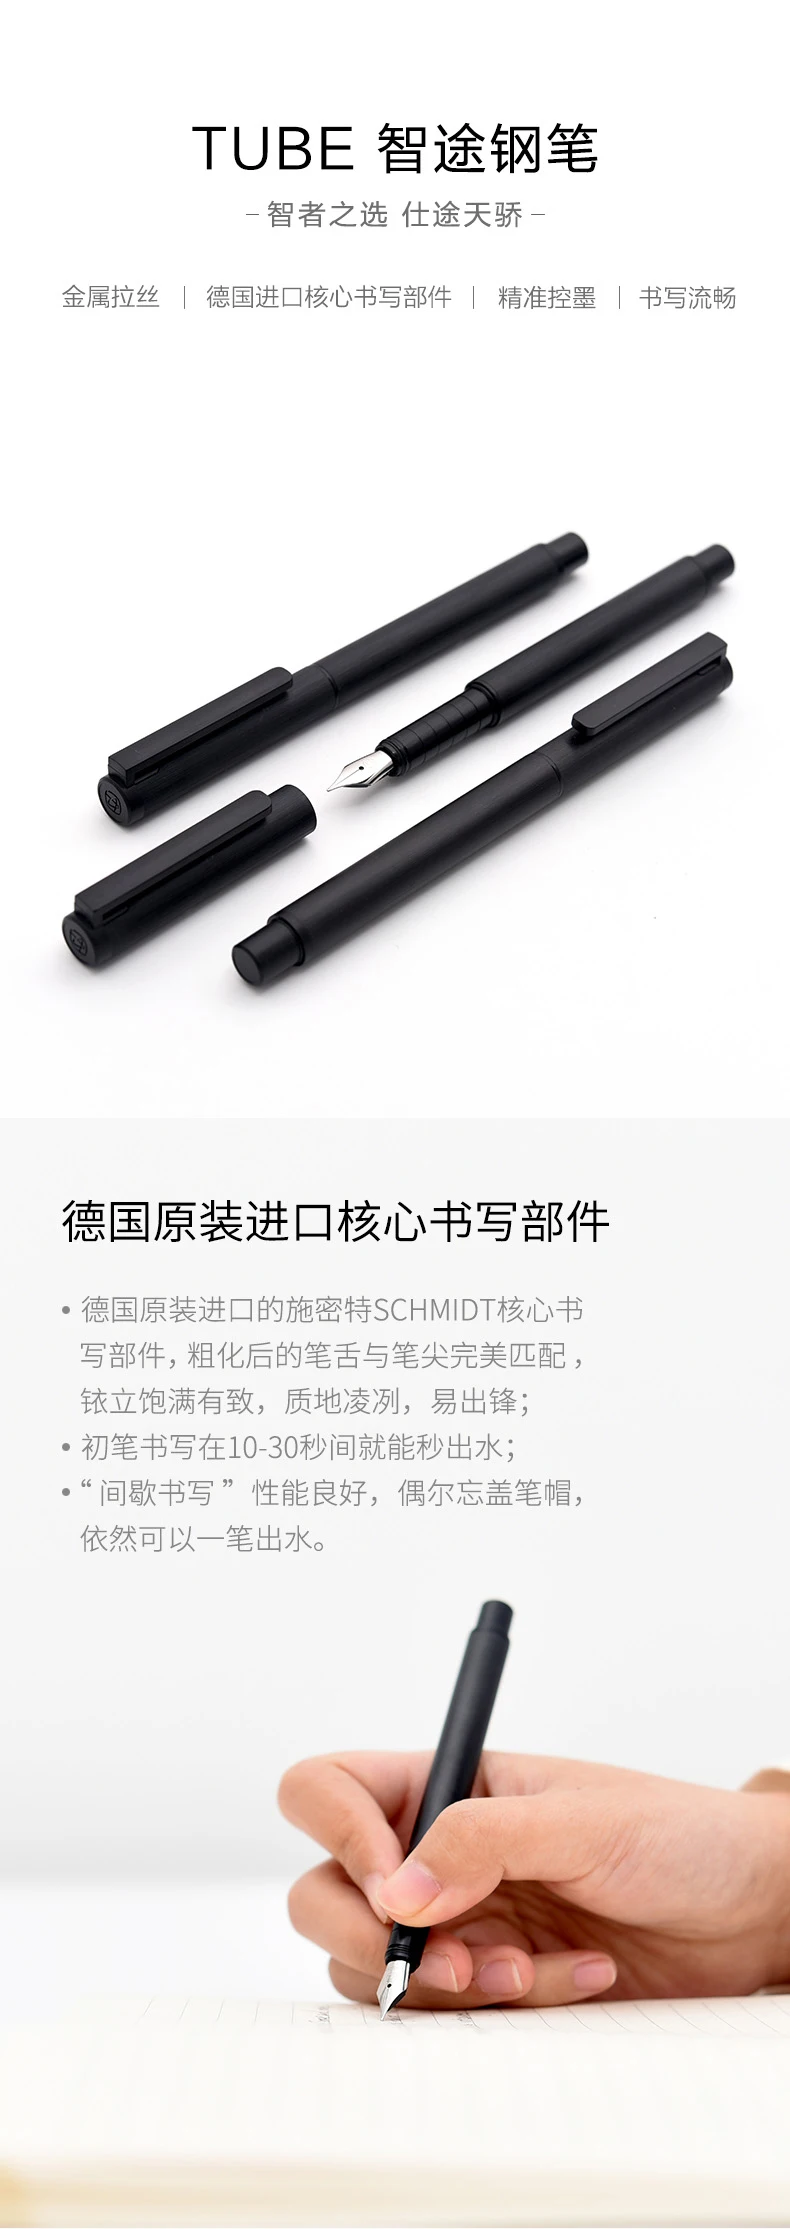 High-end классические черные KACO трубки Набор авторучек 0,5 мм подарочные ручки чернил для студент; преподаватель Бизнес партнер написание